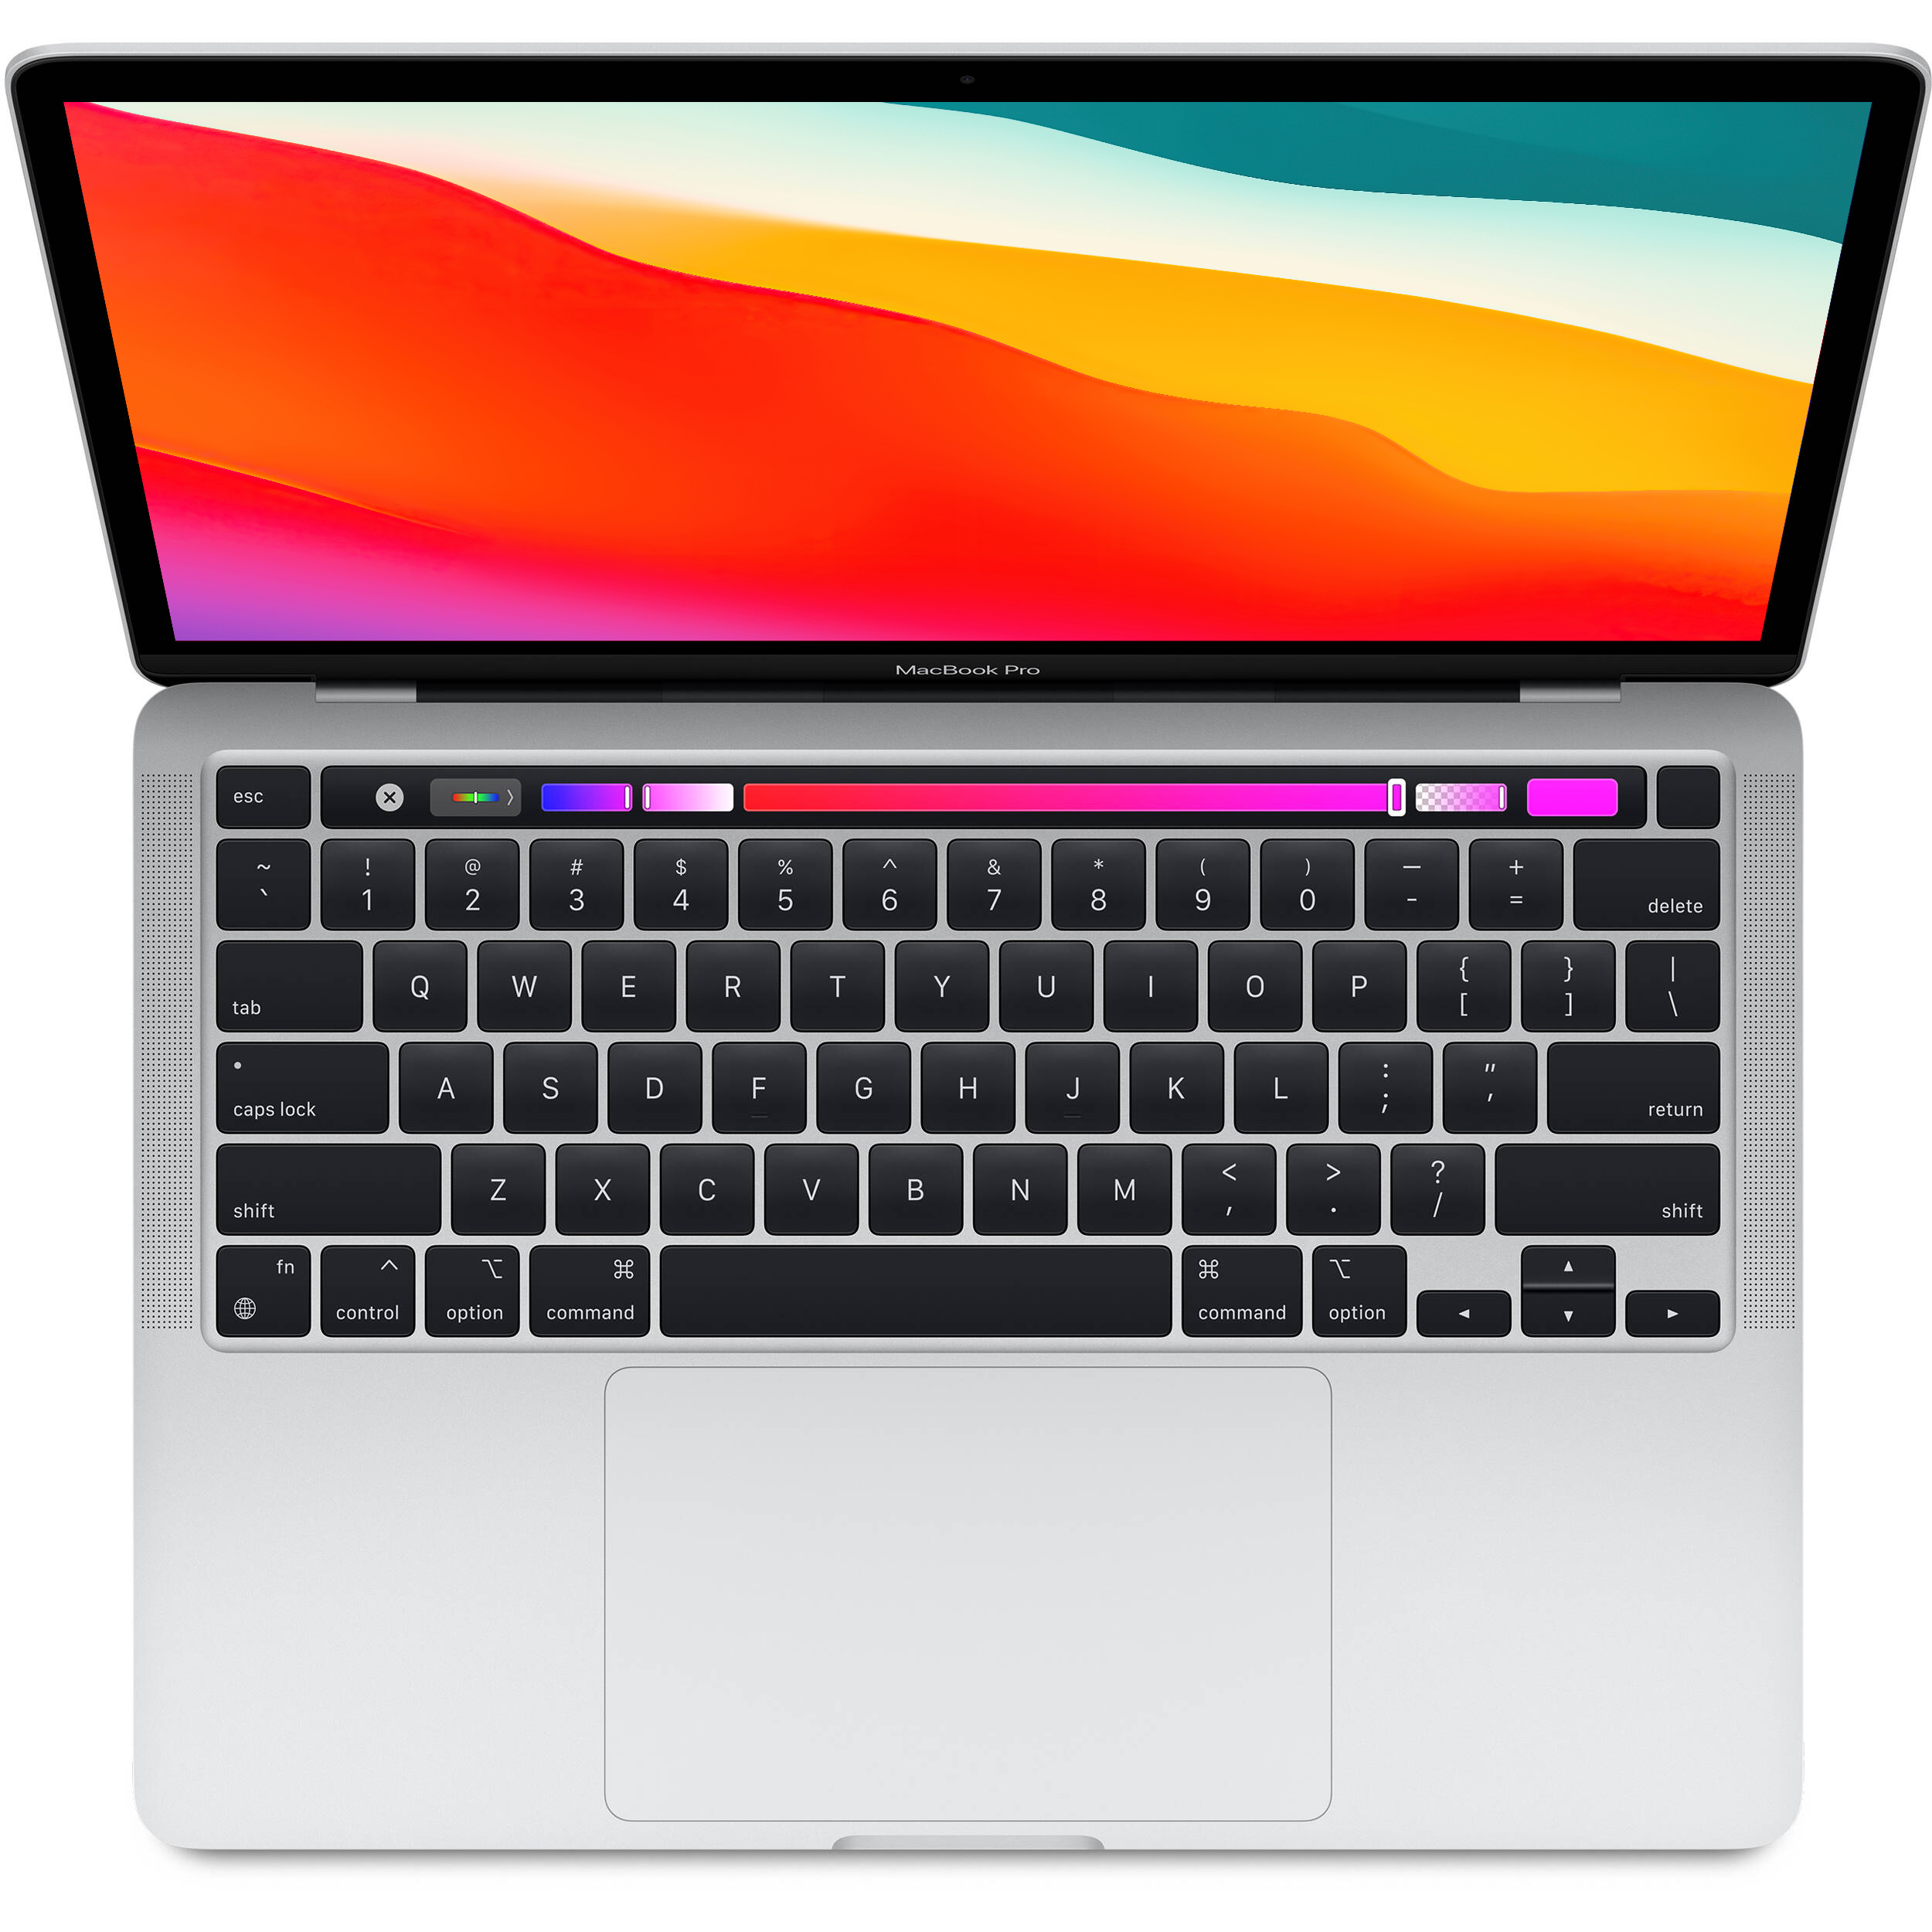 2020年 CTO】MacBook Pro i5 メモリ16GB 256GB www.krzysztofbialy.com